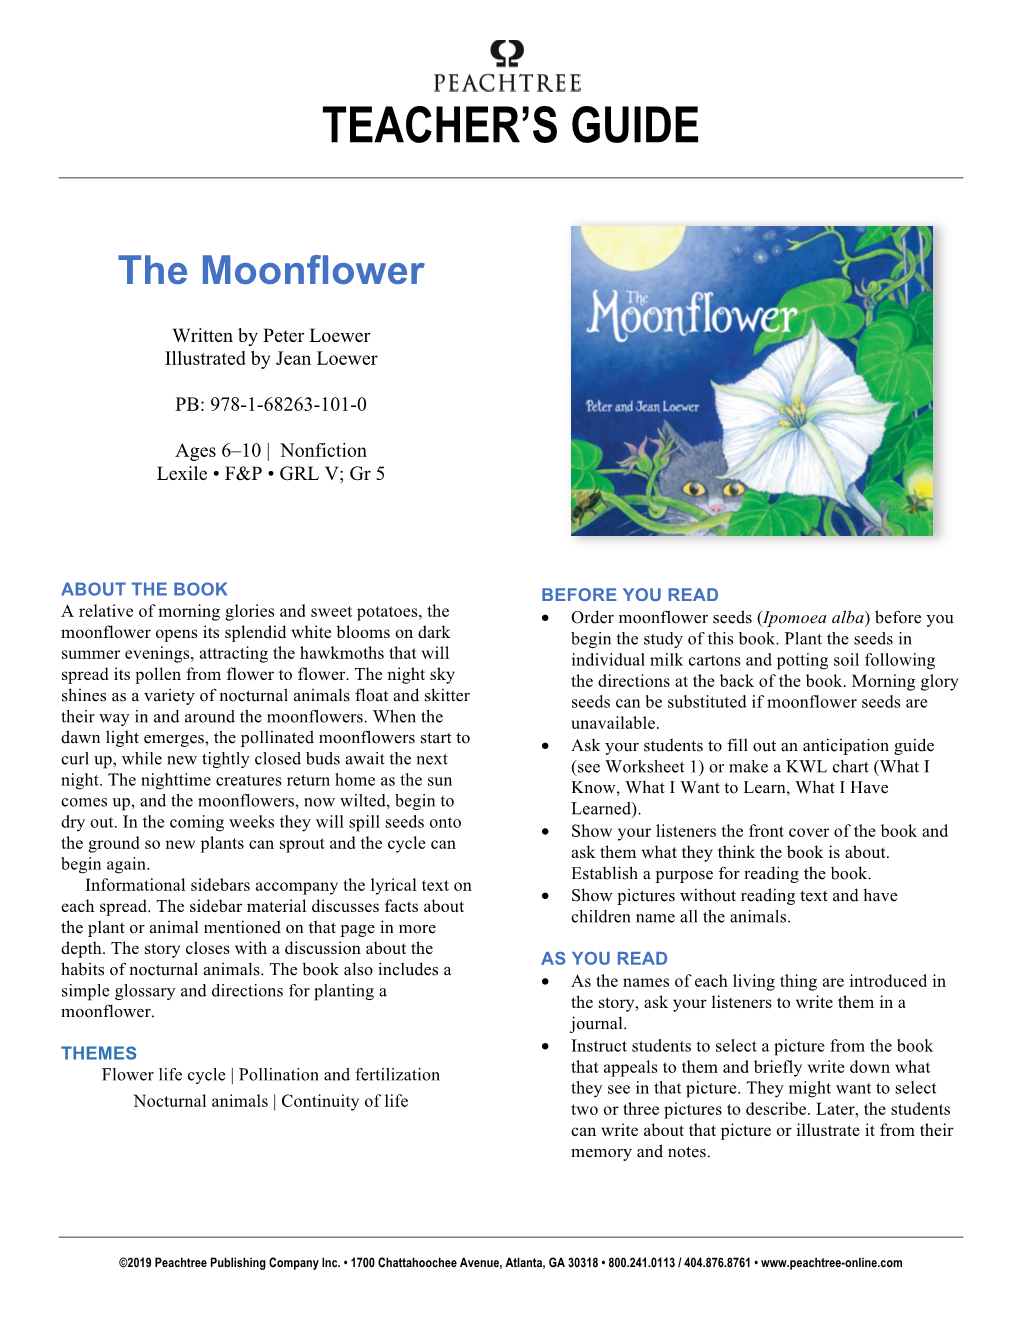 The Moonflower | Teacher's Guide